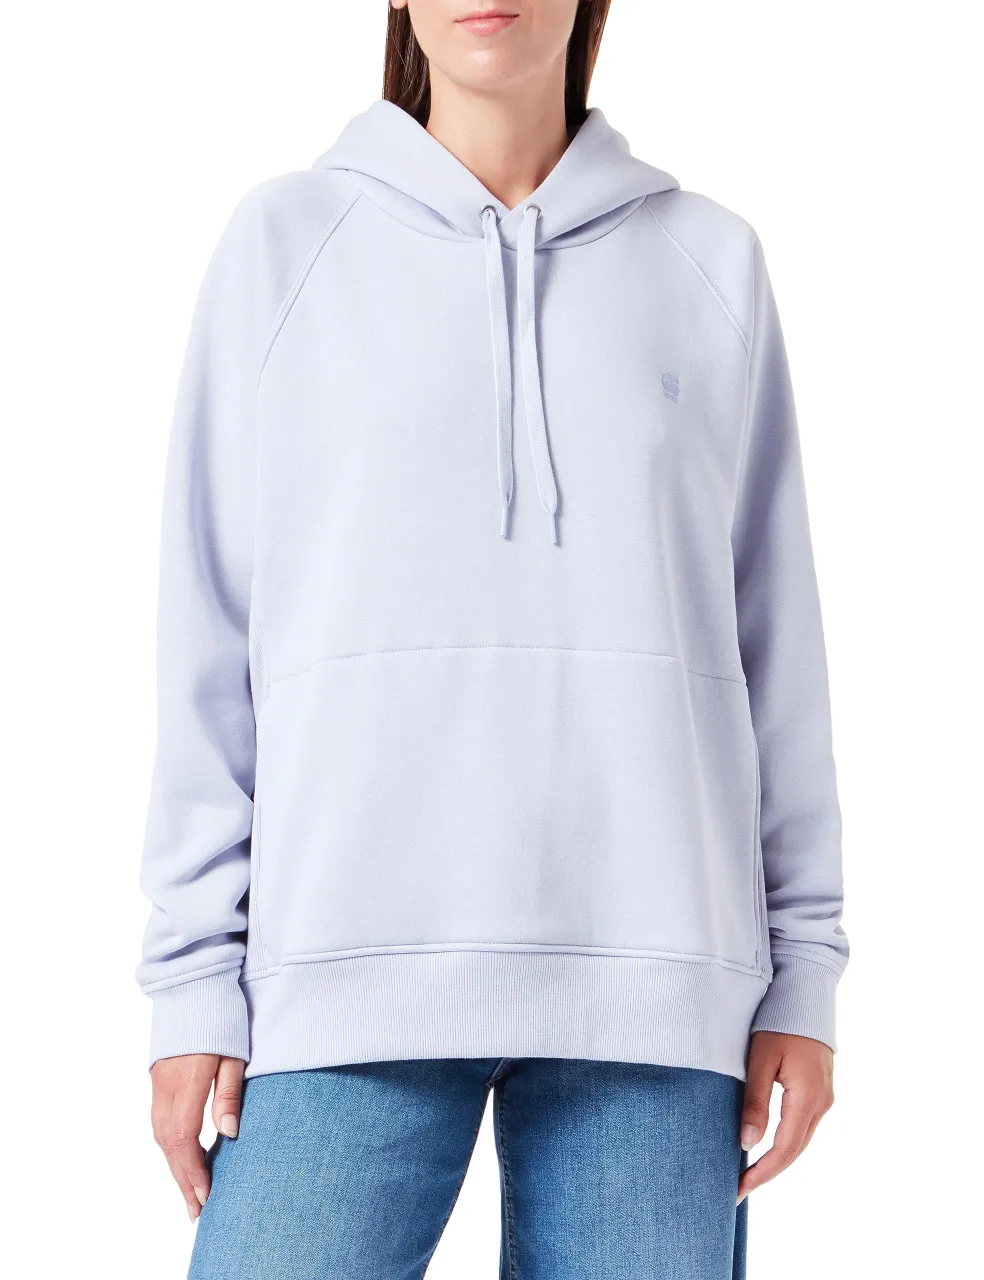 G-STAR RAW Damen Premium Core 2.0 Hooded Sweatshirt